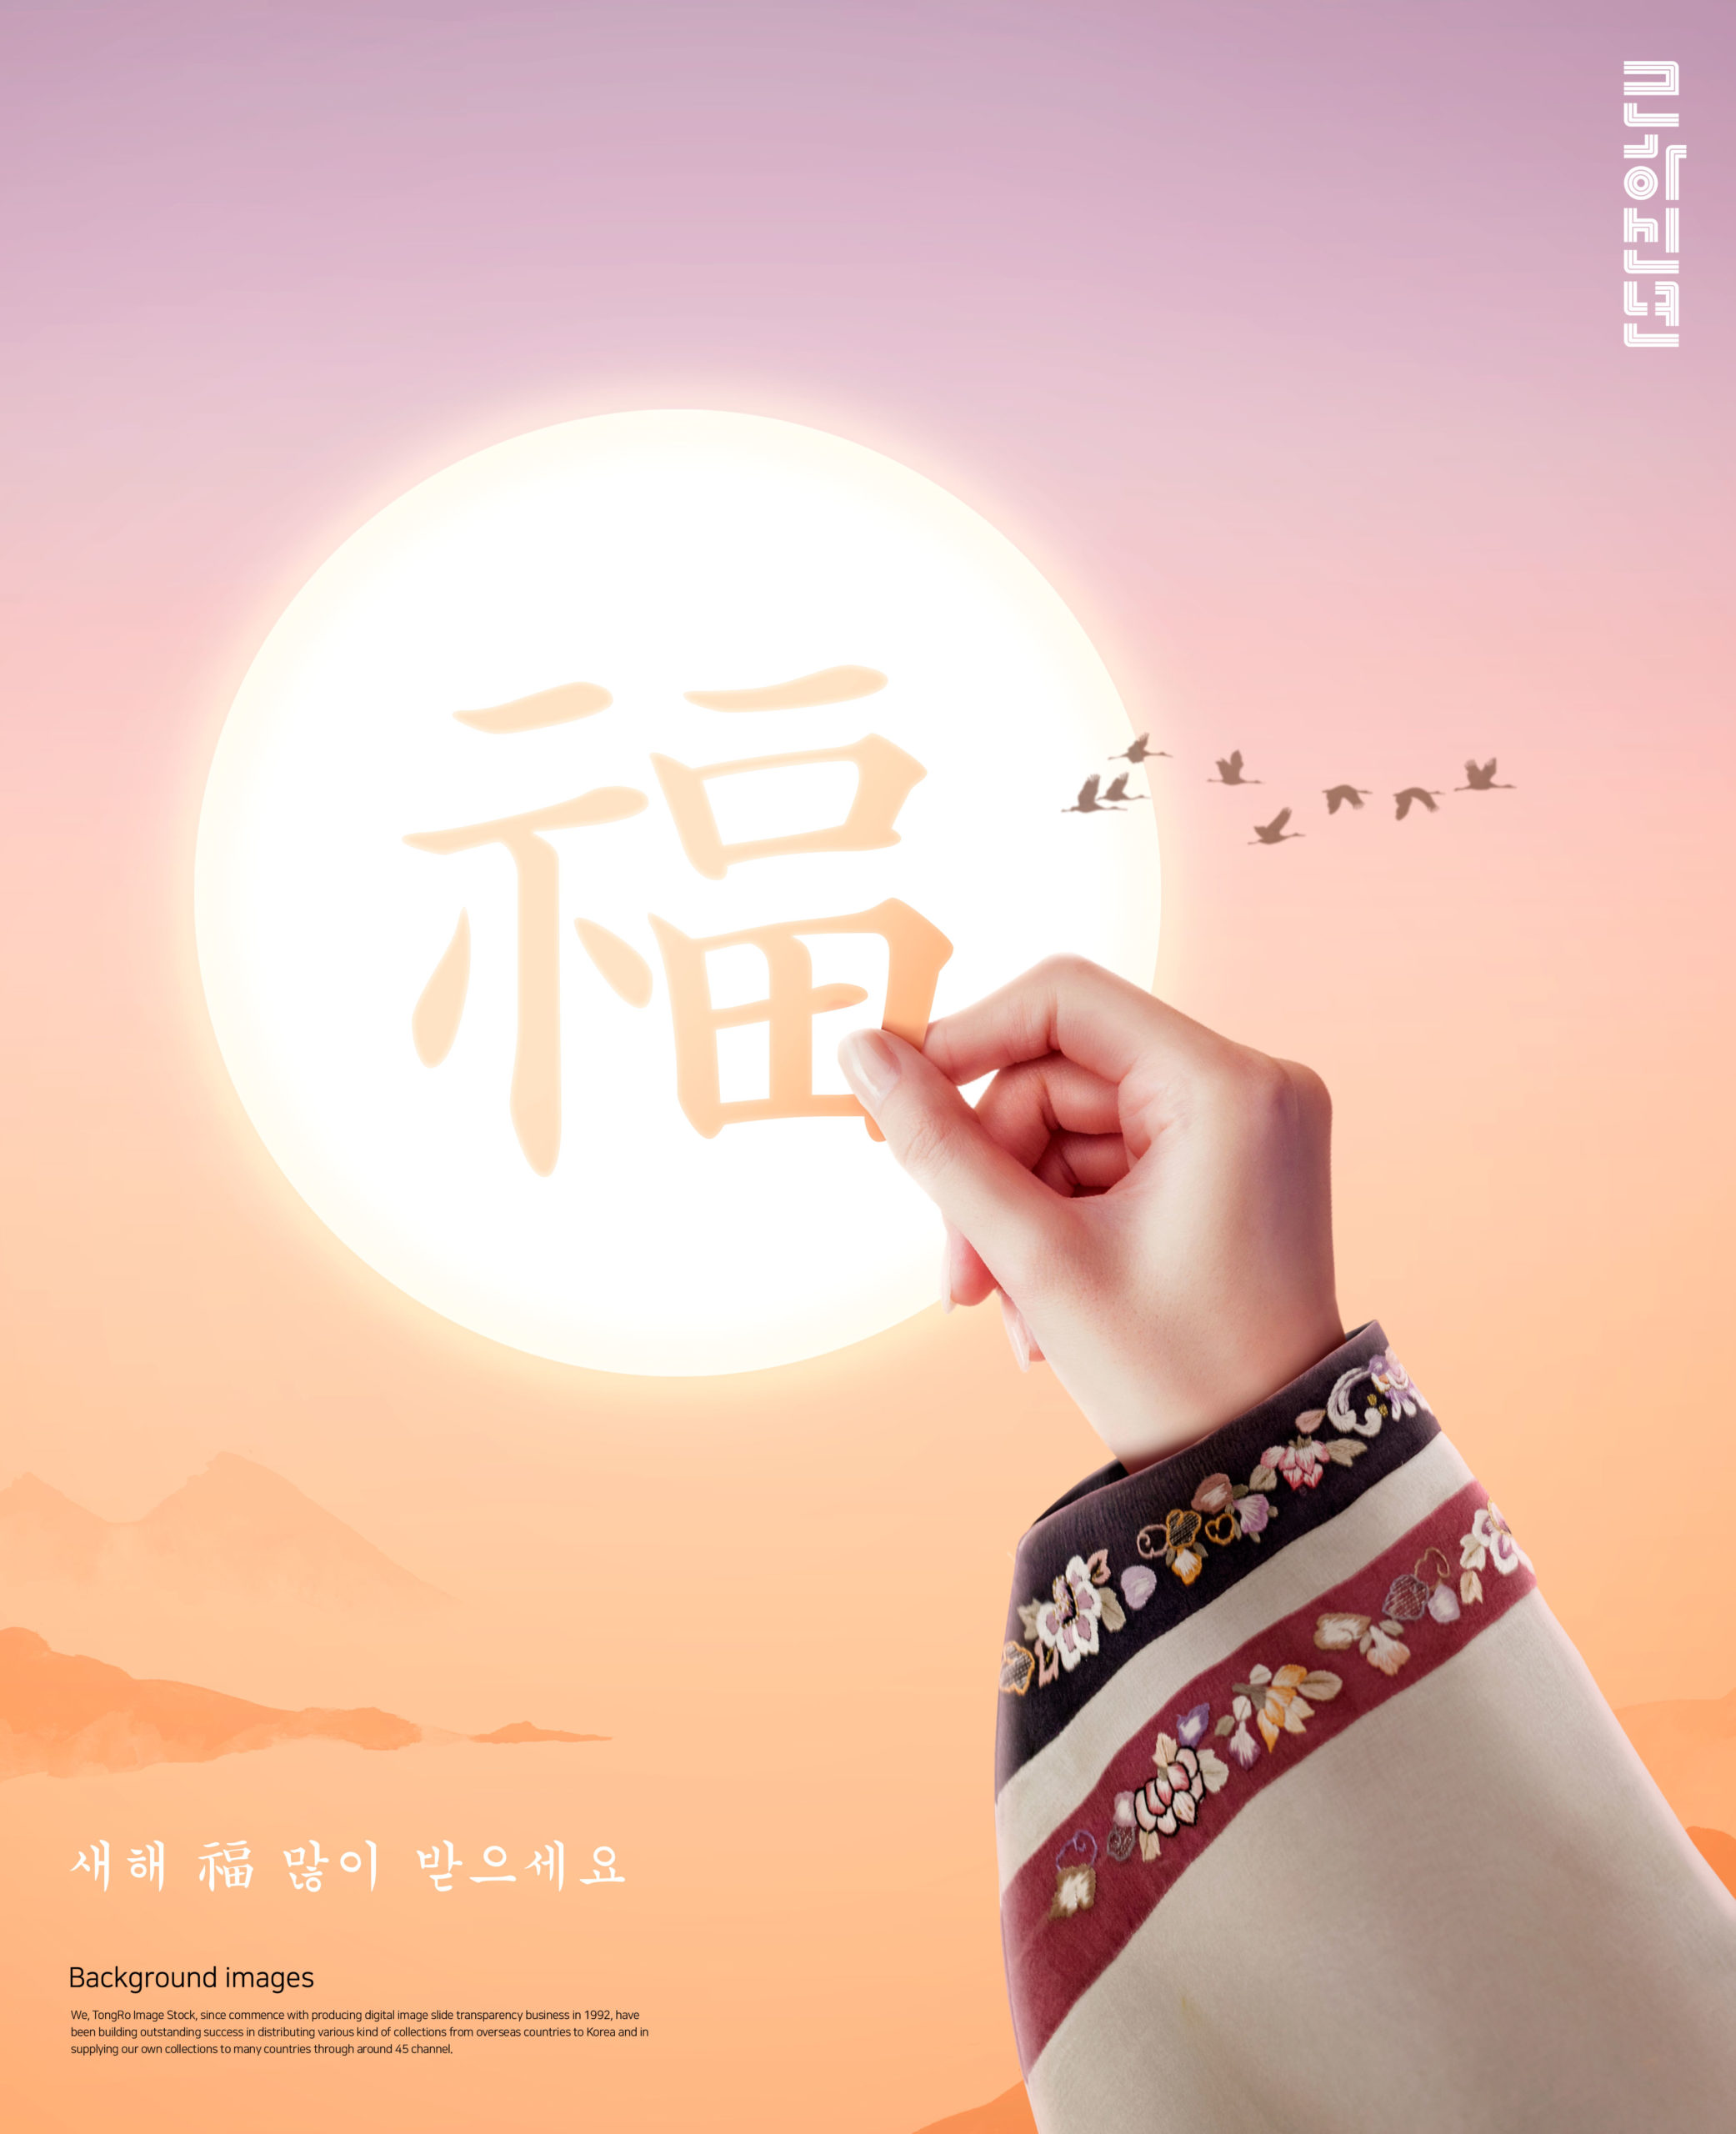 韩国元素风格”福到/月圆”新年主题海报模板套装[PSD]插图(3)